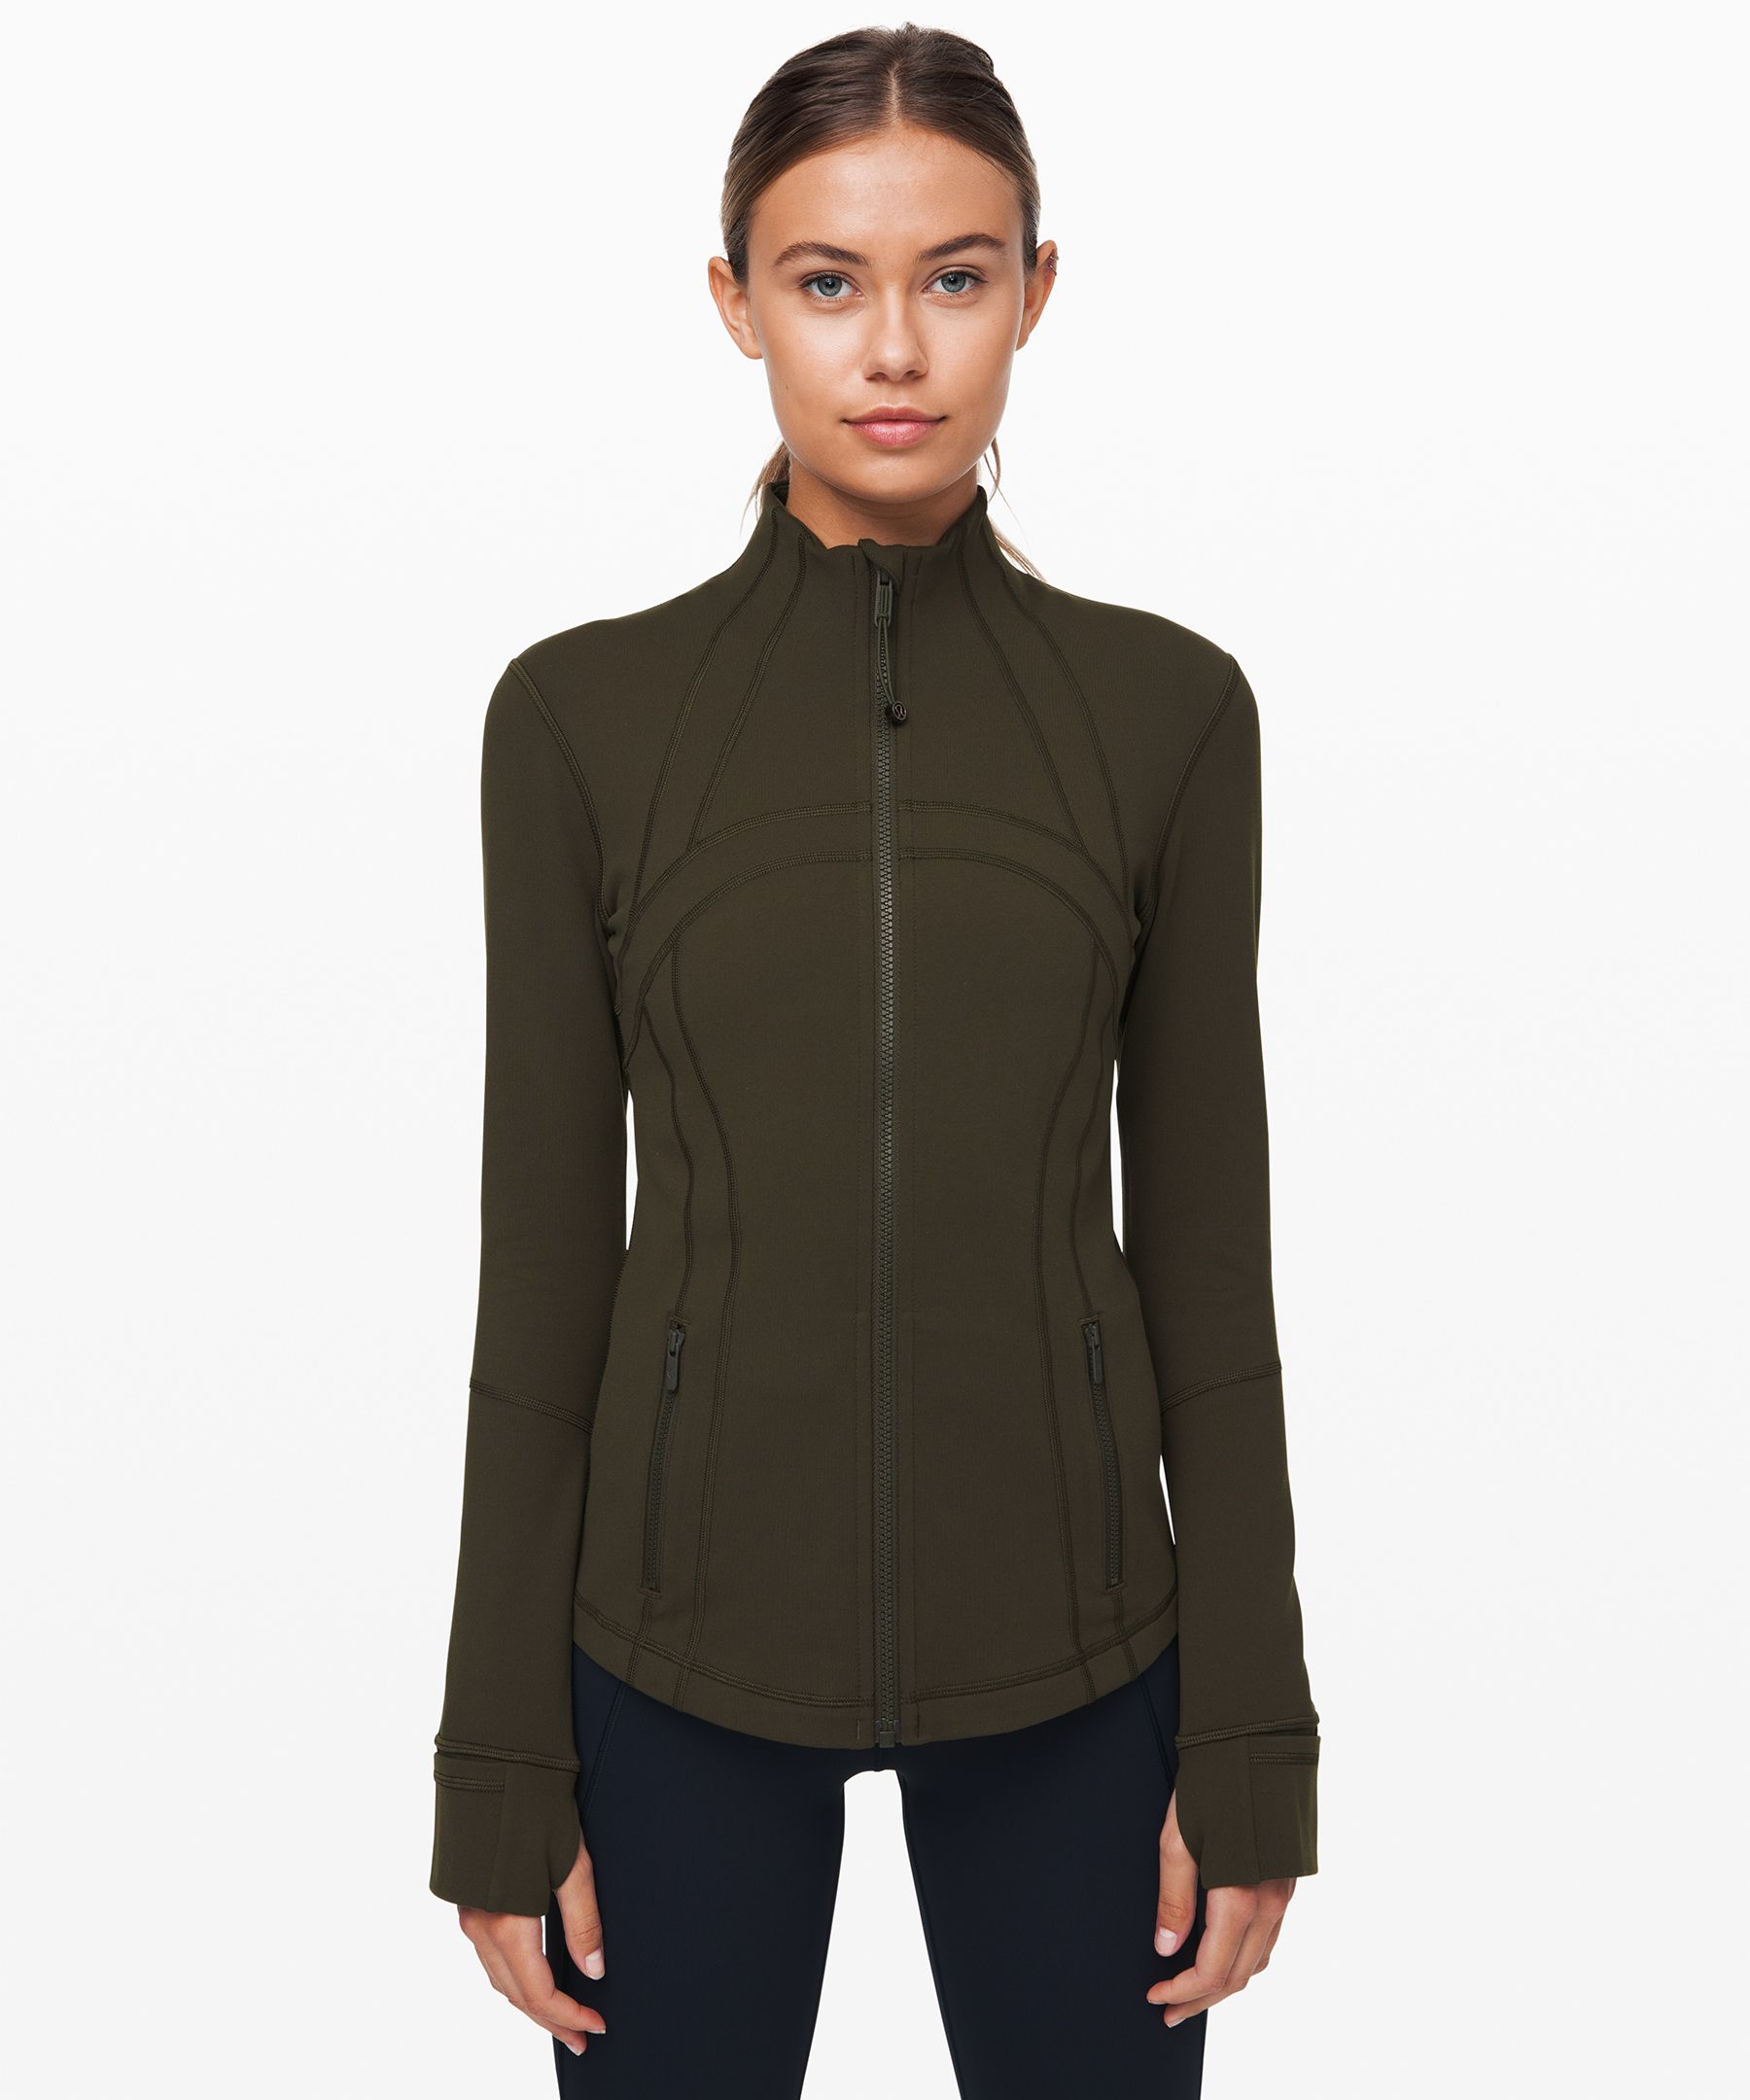 Define Jacket *Luon | Jackets & Coats | Lululemon UK